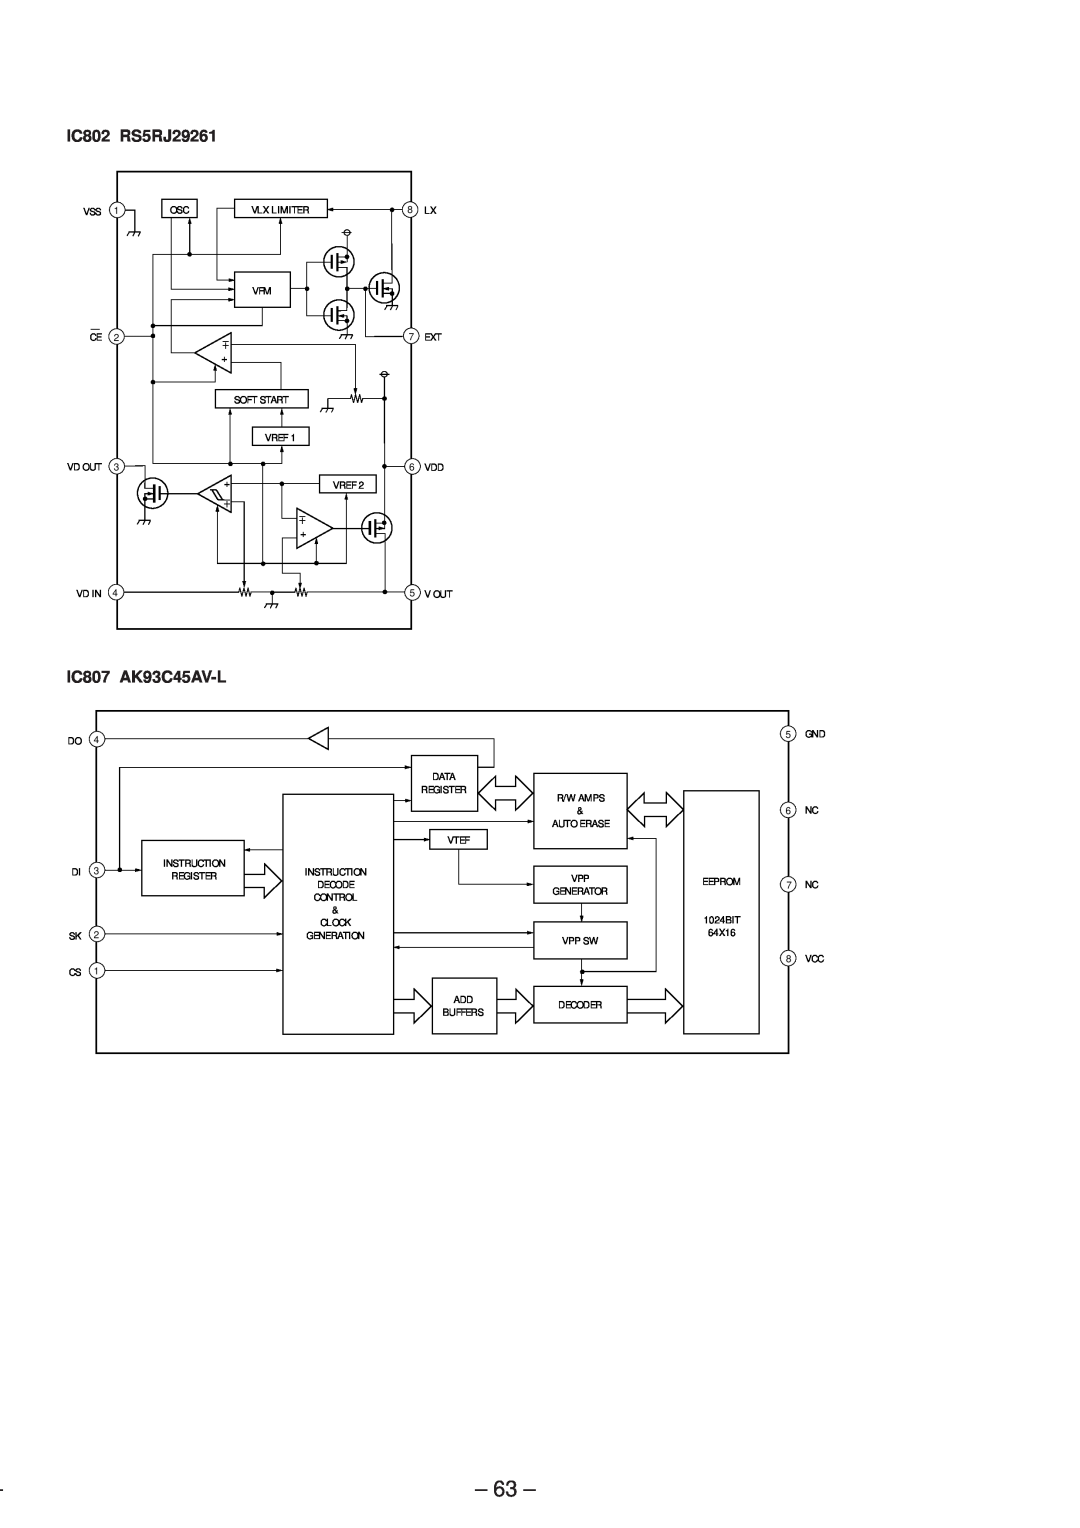 Sony MZ-R50 service manual IC802 RS5RJ29261, IC807 AK93C45AV-L 